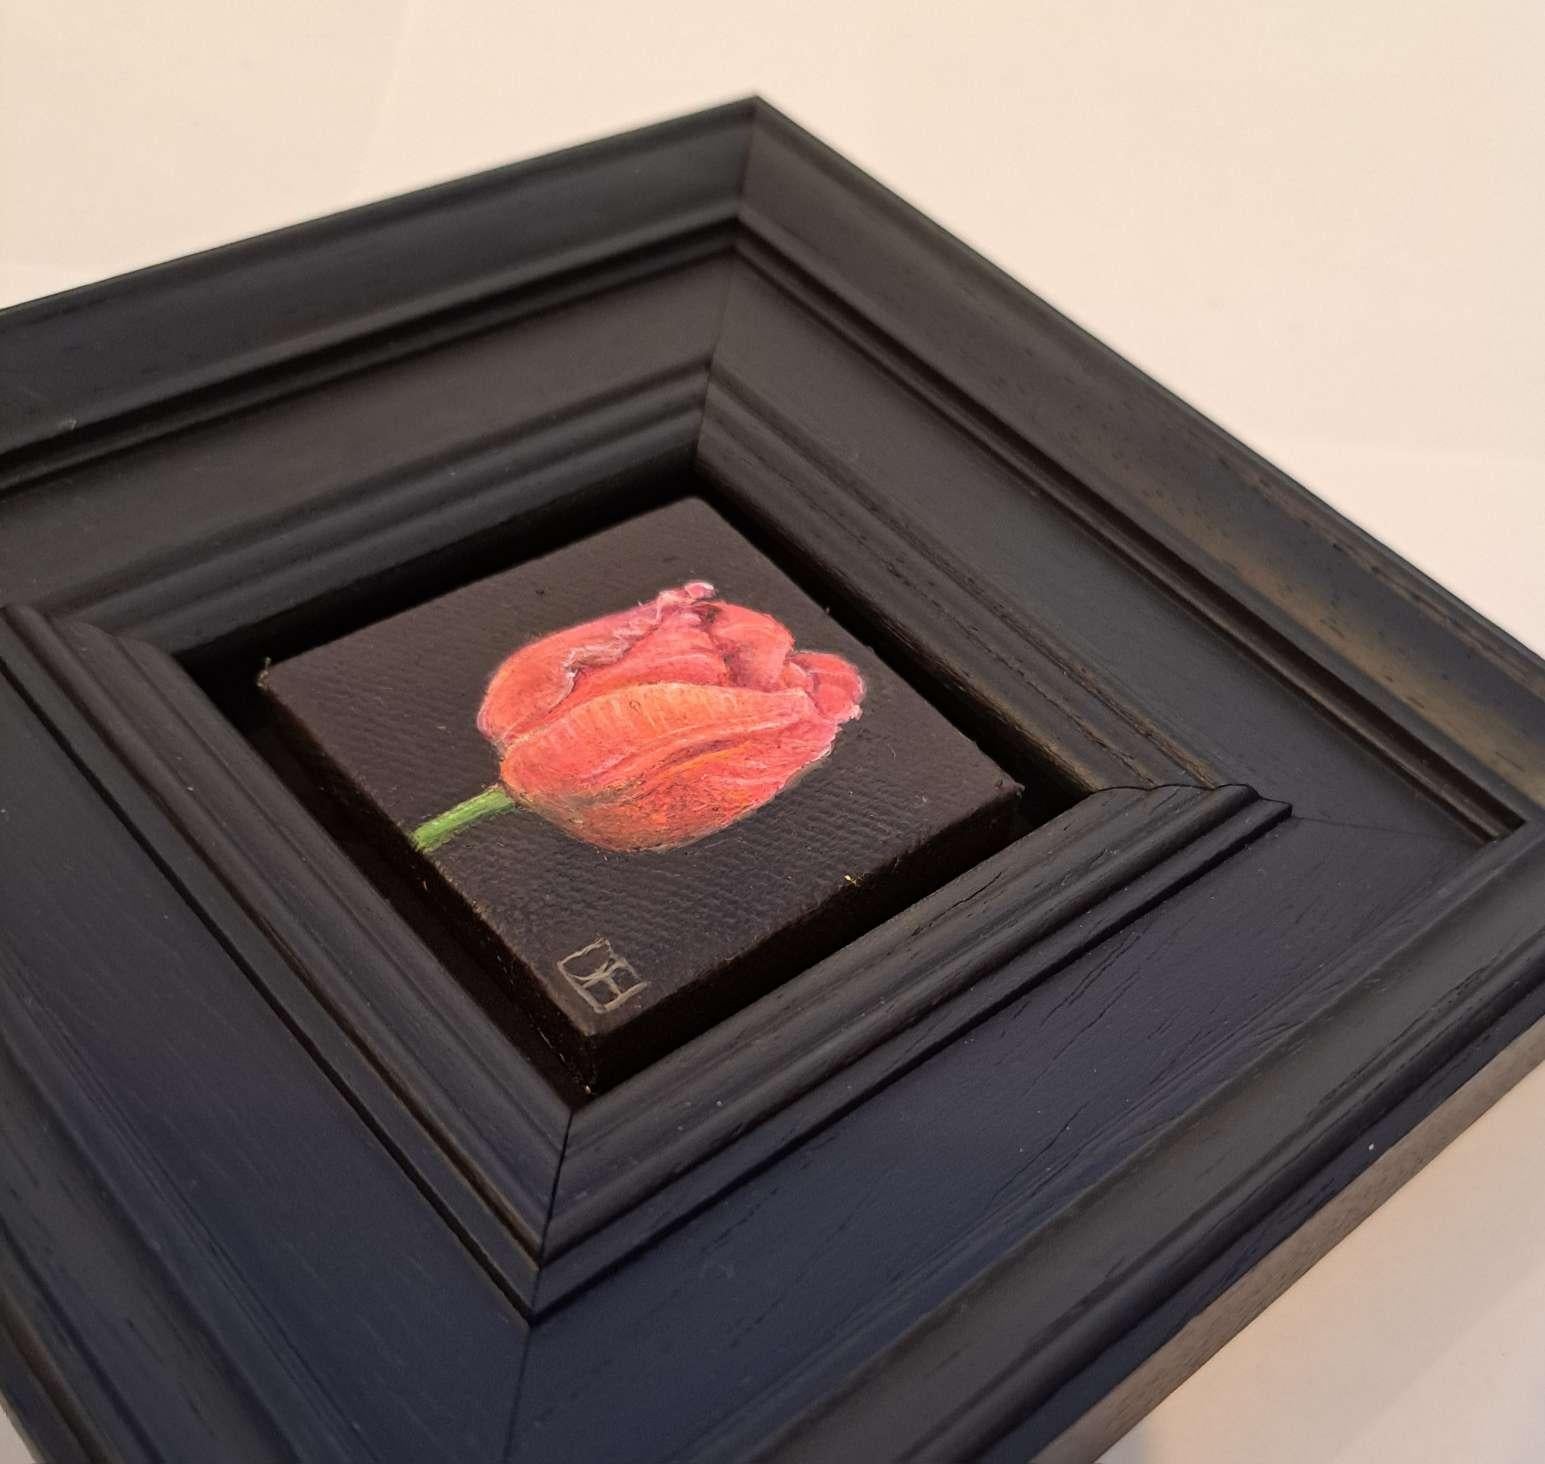 Pocket Veronique Tulip est une peinture à l'huile originale réalisée par Dani Humberstone dans le cadre de sa série Pocket Painting, qui propose des peintures à l'huile réalistes à petite échelle, avec un clin d'œil aux natures mortes baroques. Les